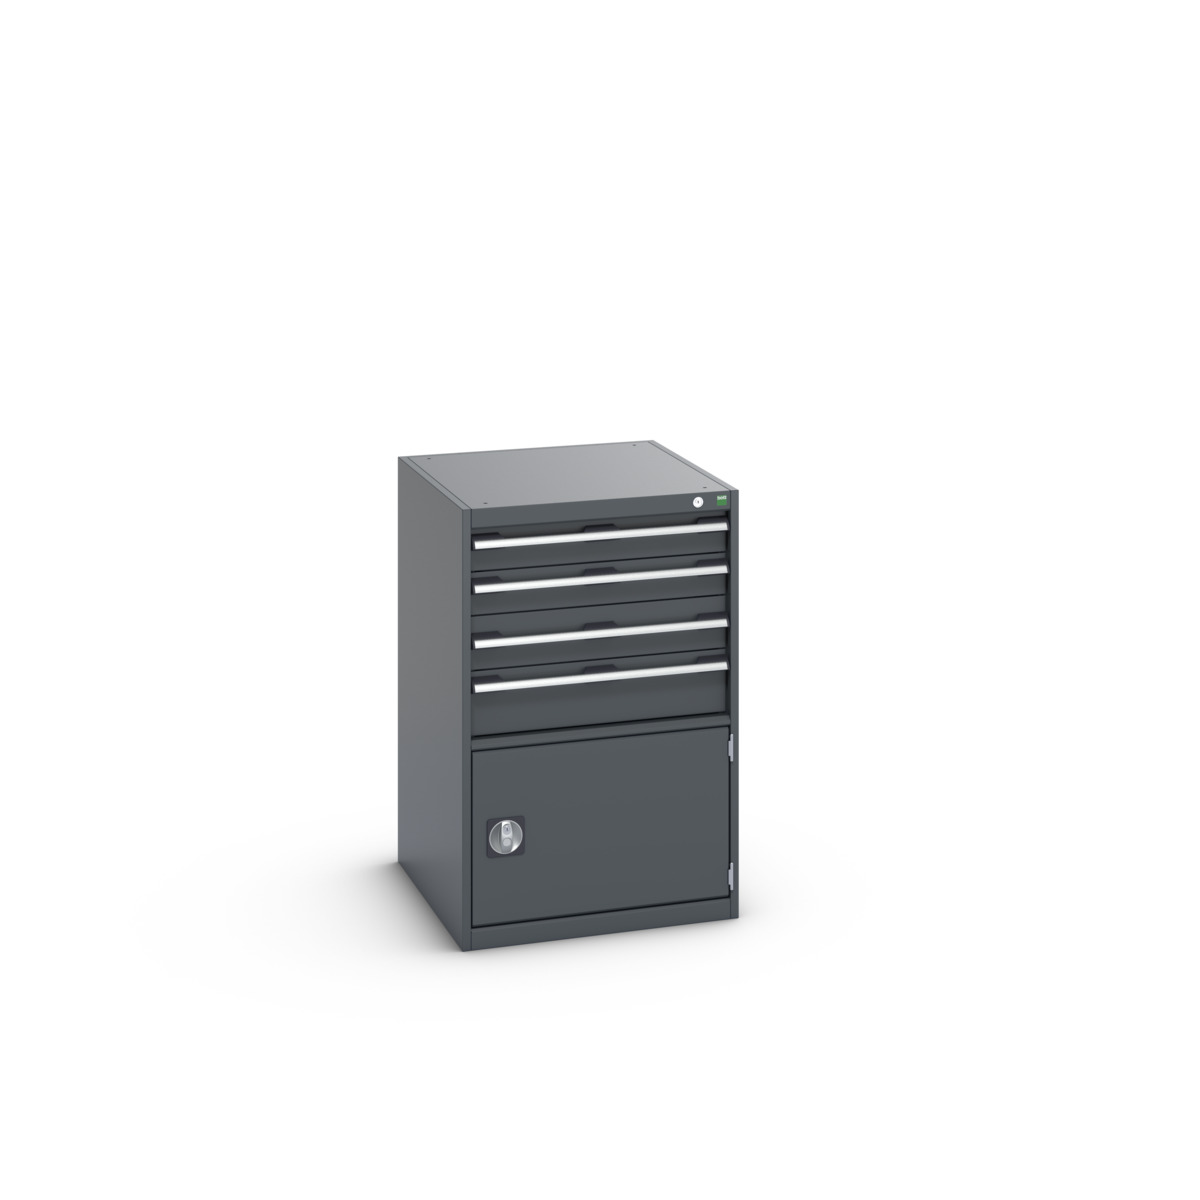 40027023.77V - cubio drawer-door cabinet